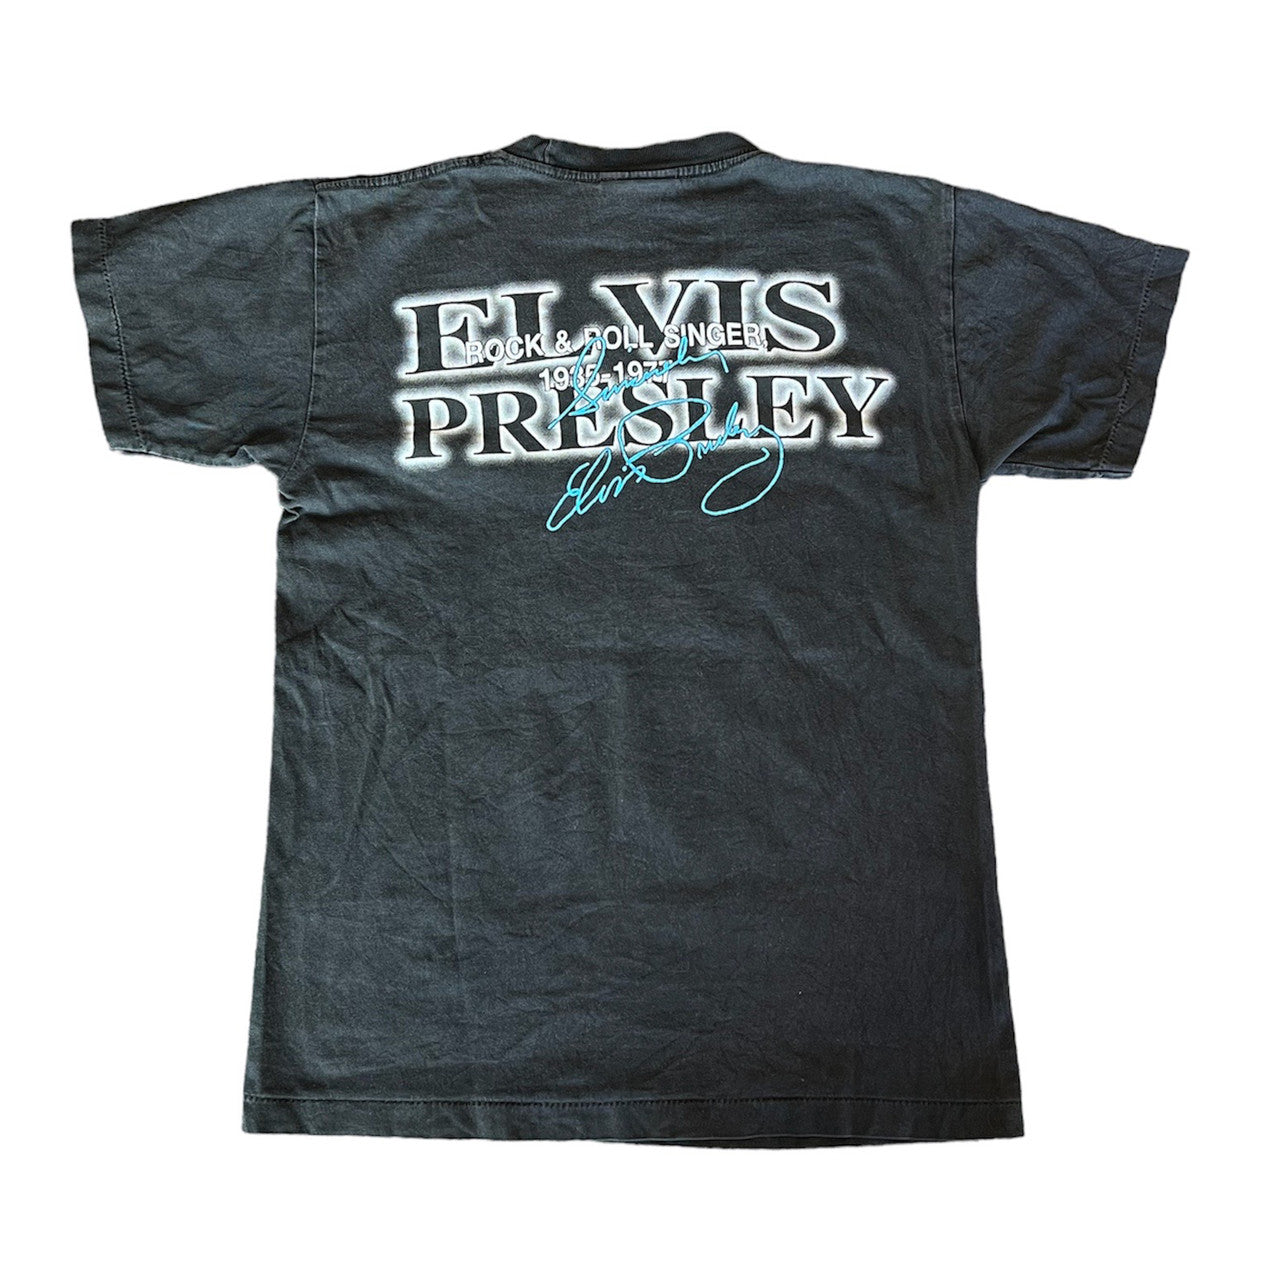 Vintage Elvis Tshirt